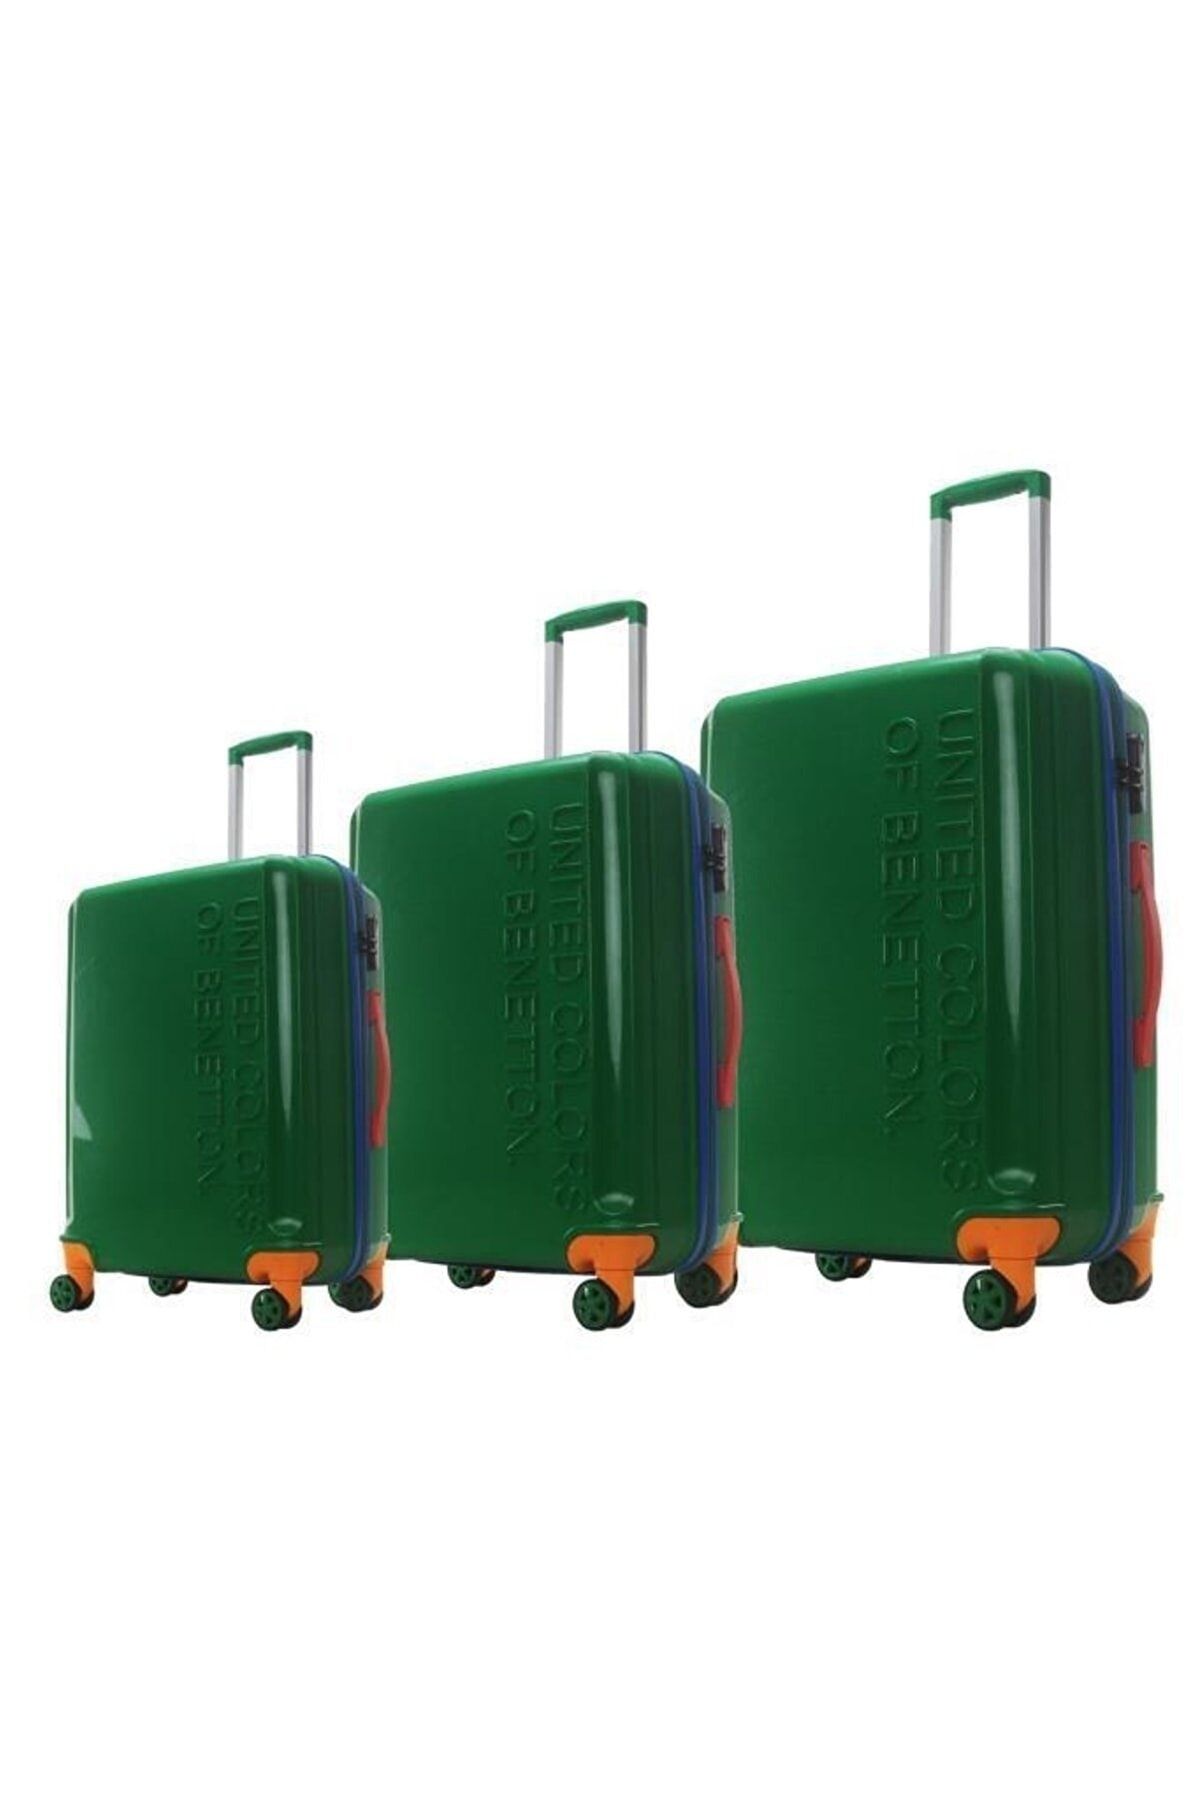 Trendsbag Travel Store Benetton 3'lü Valiz Seti Boy %100 Polipropilen Kırılmaz Valiz Yeşil 303x 303x